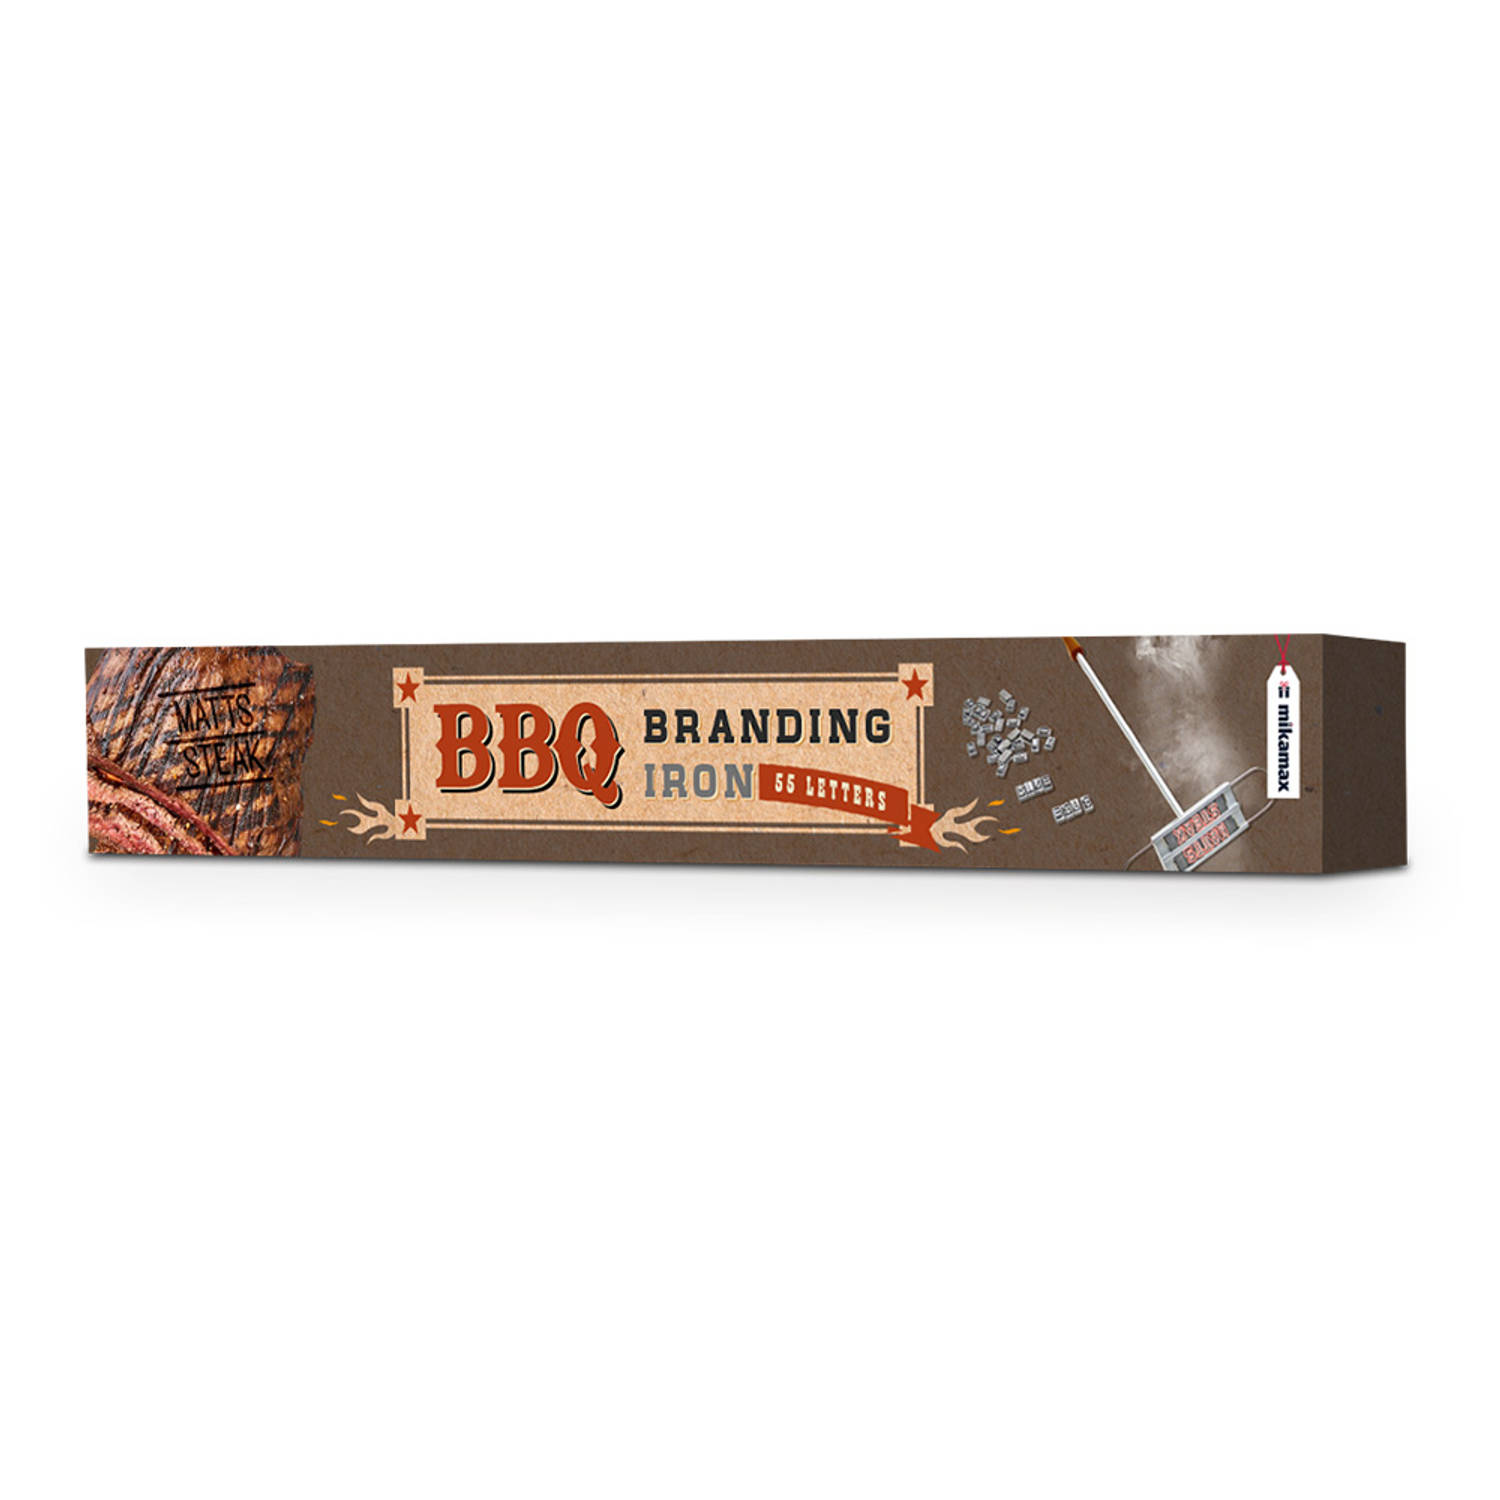 BBQ Brandijzer - Maak je vlees uniek met eigen tekst - Zwart & RVS - Grill accessoire - Gepersonaliseerd BBQ gereedschap